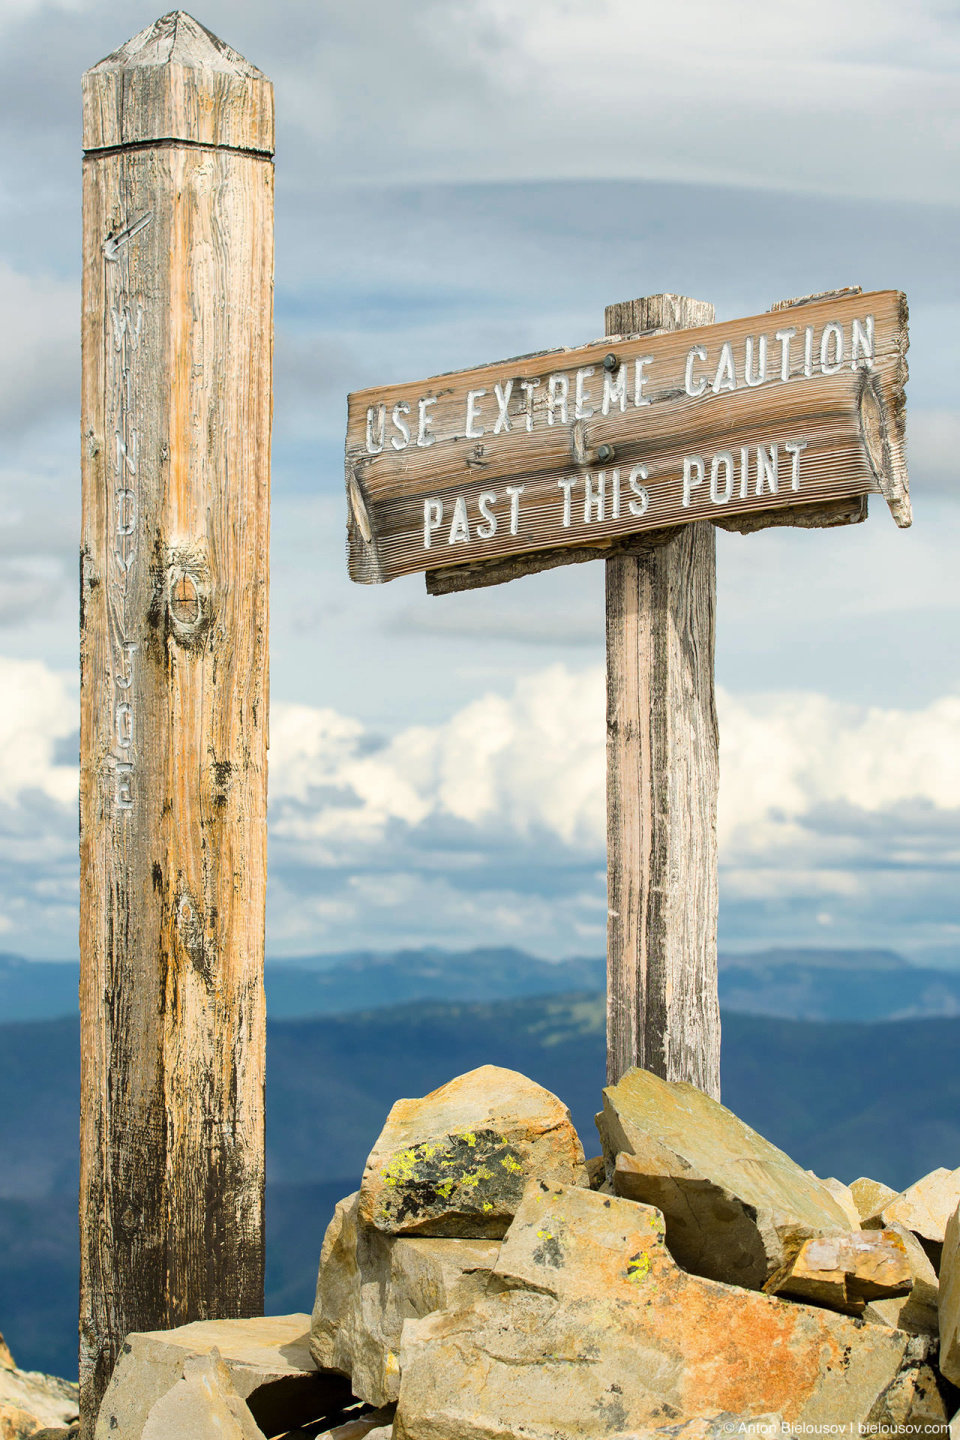 Знак на первом пике горы Frosty Mountain: «Use extreme caution past this point (будьте предельно осторожны начиная с этого места)»